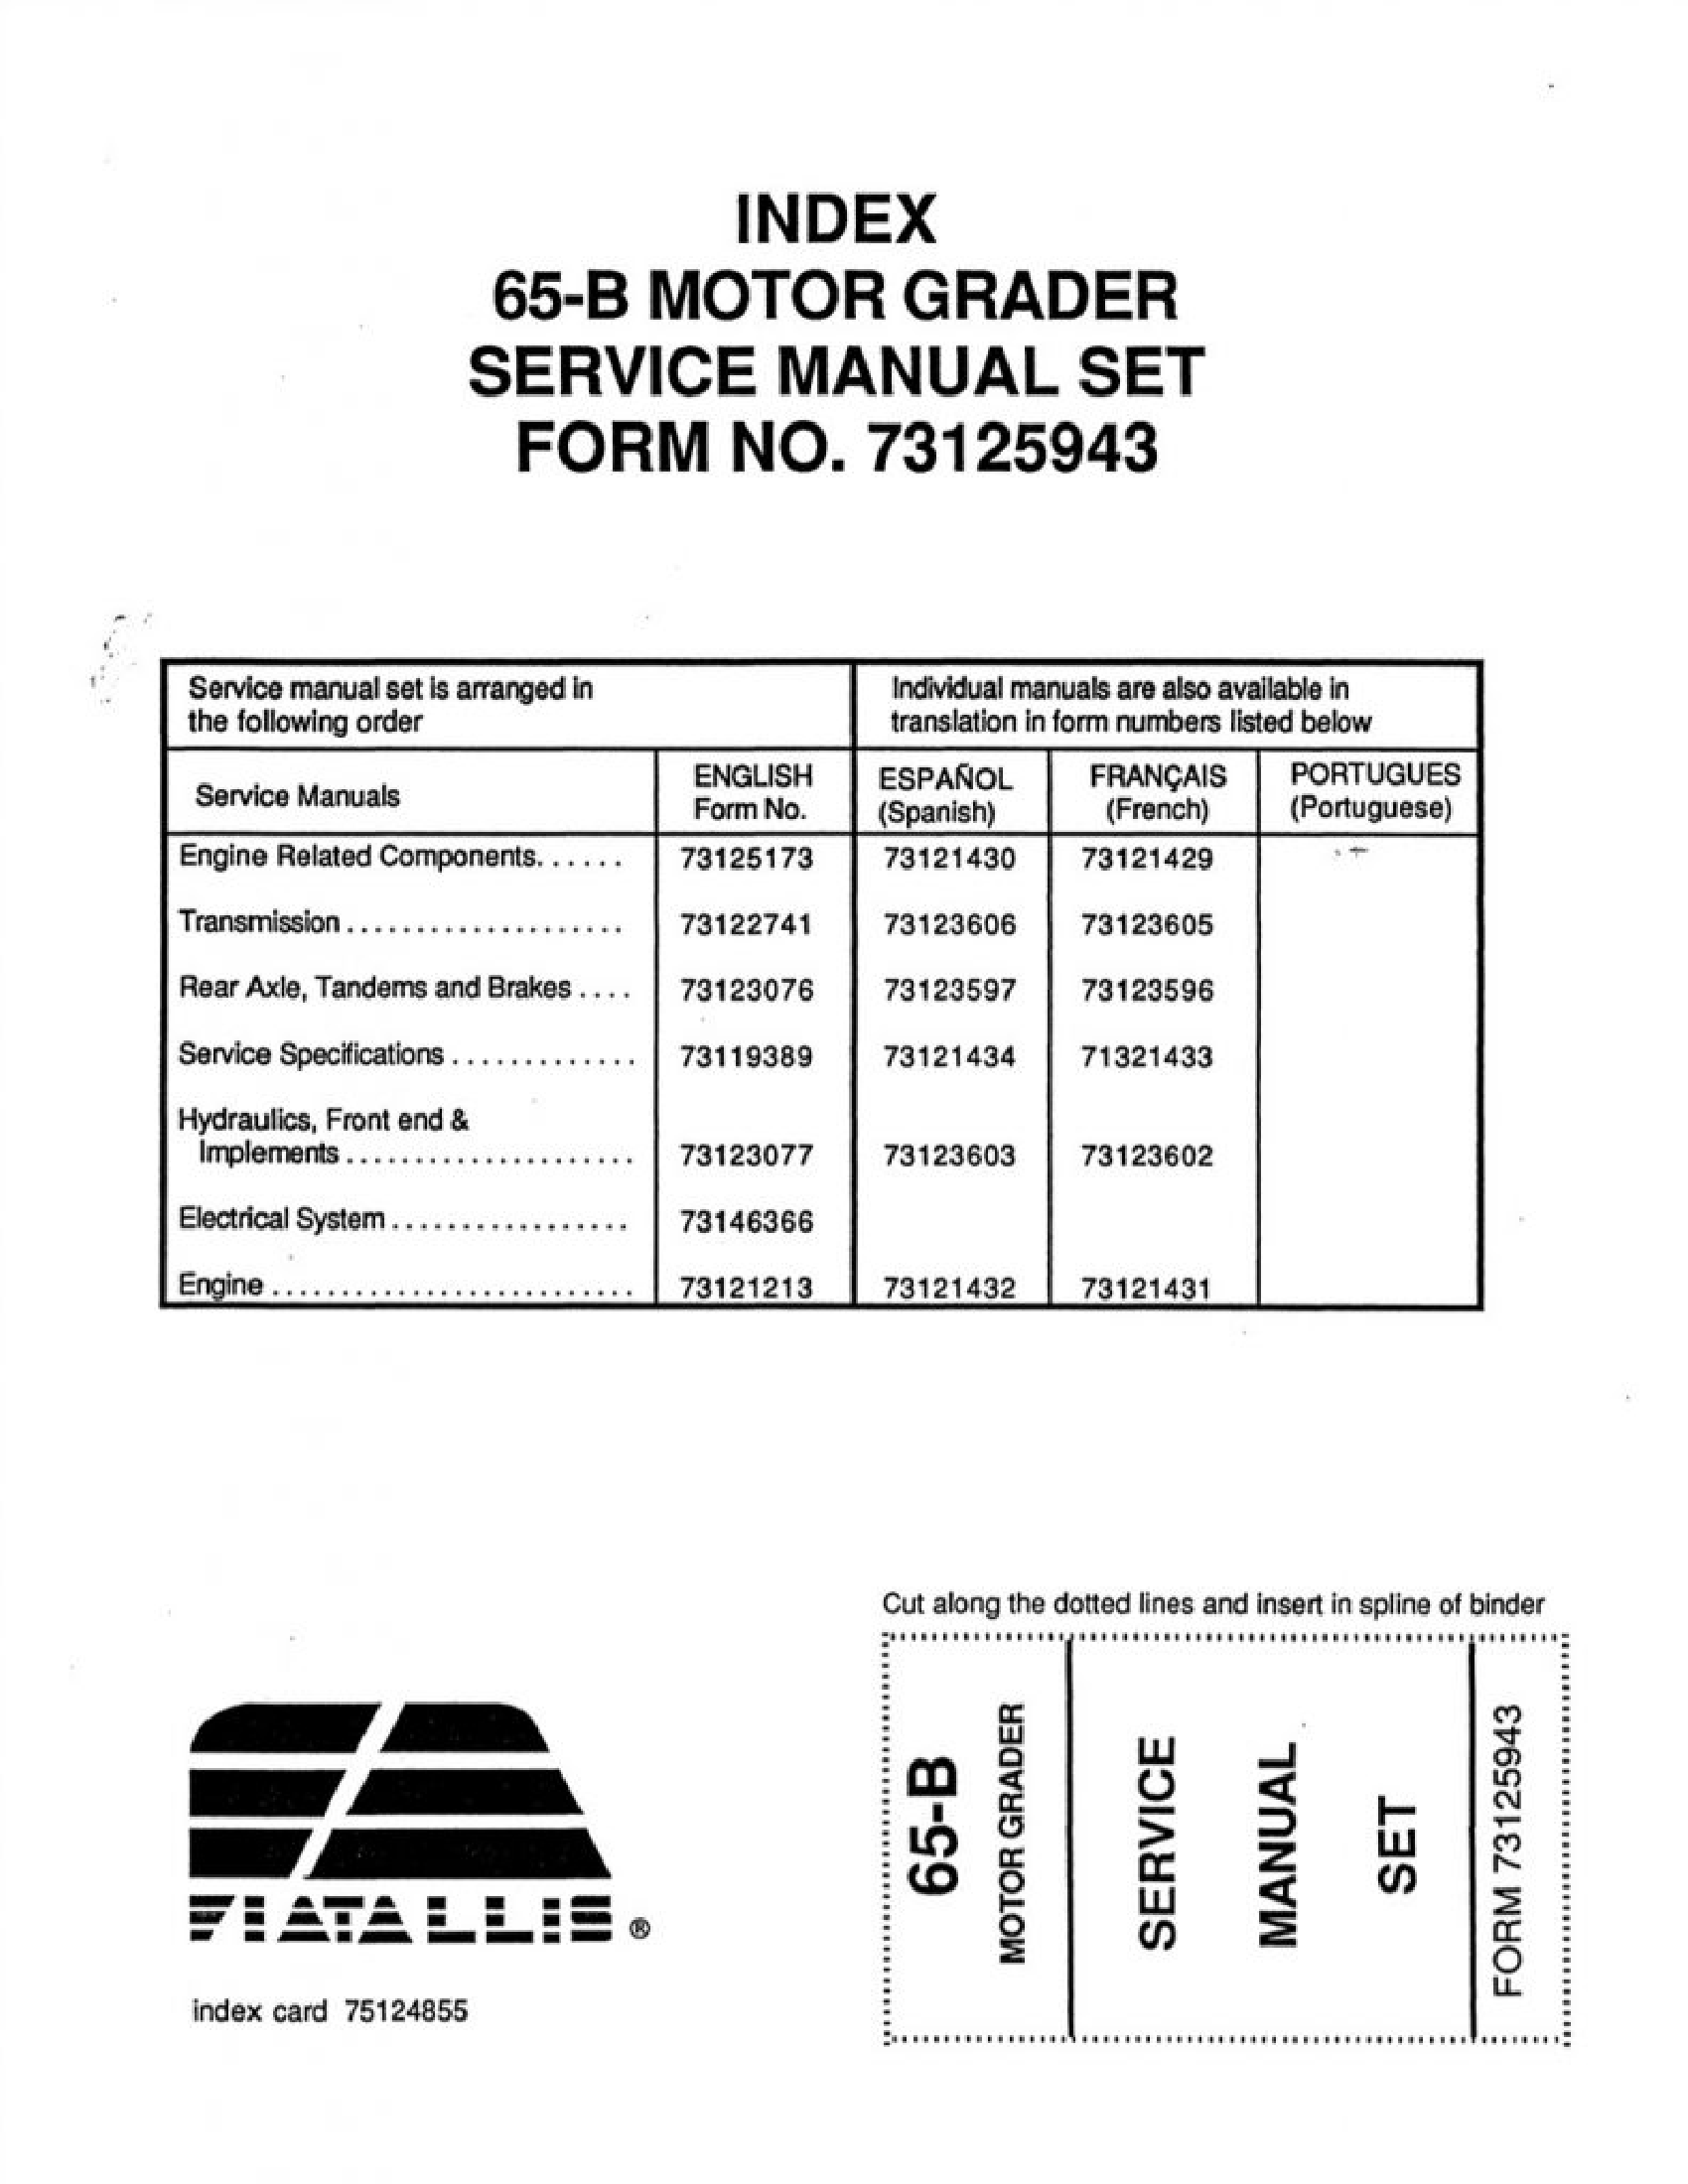 Fiat-Allis 65-B Motor Grader manual